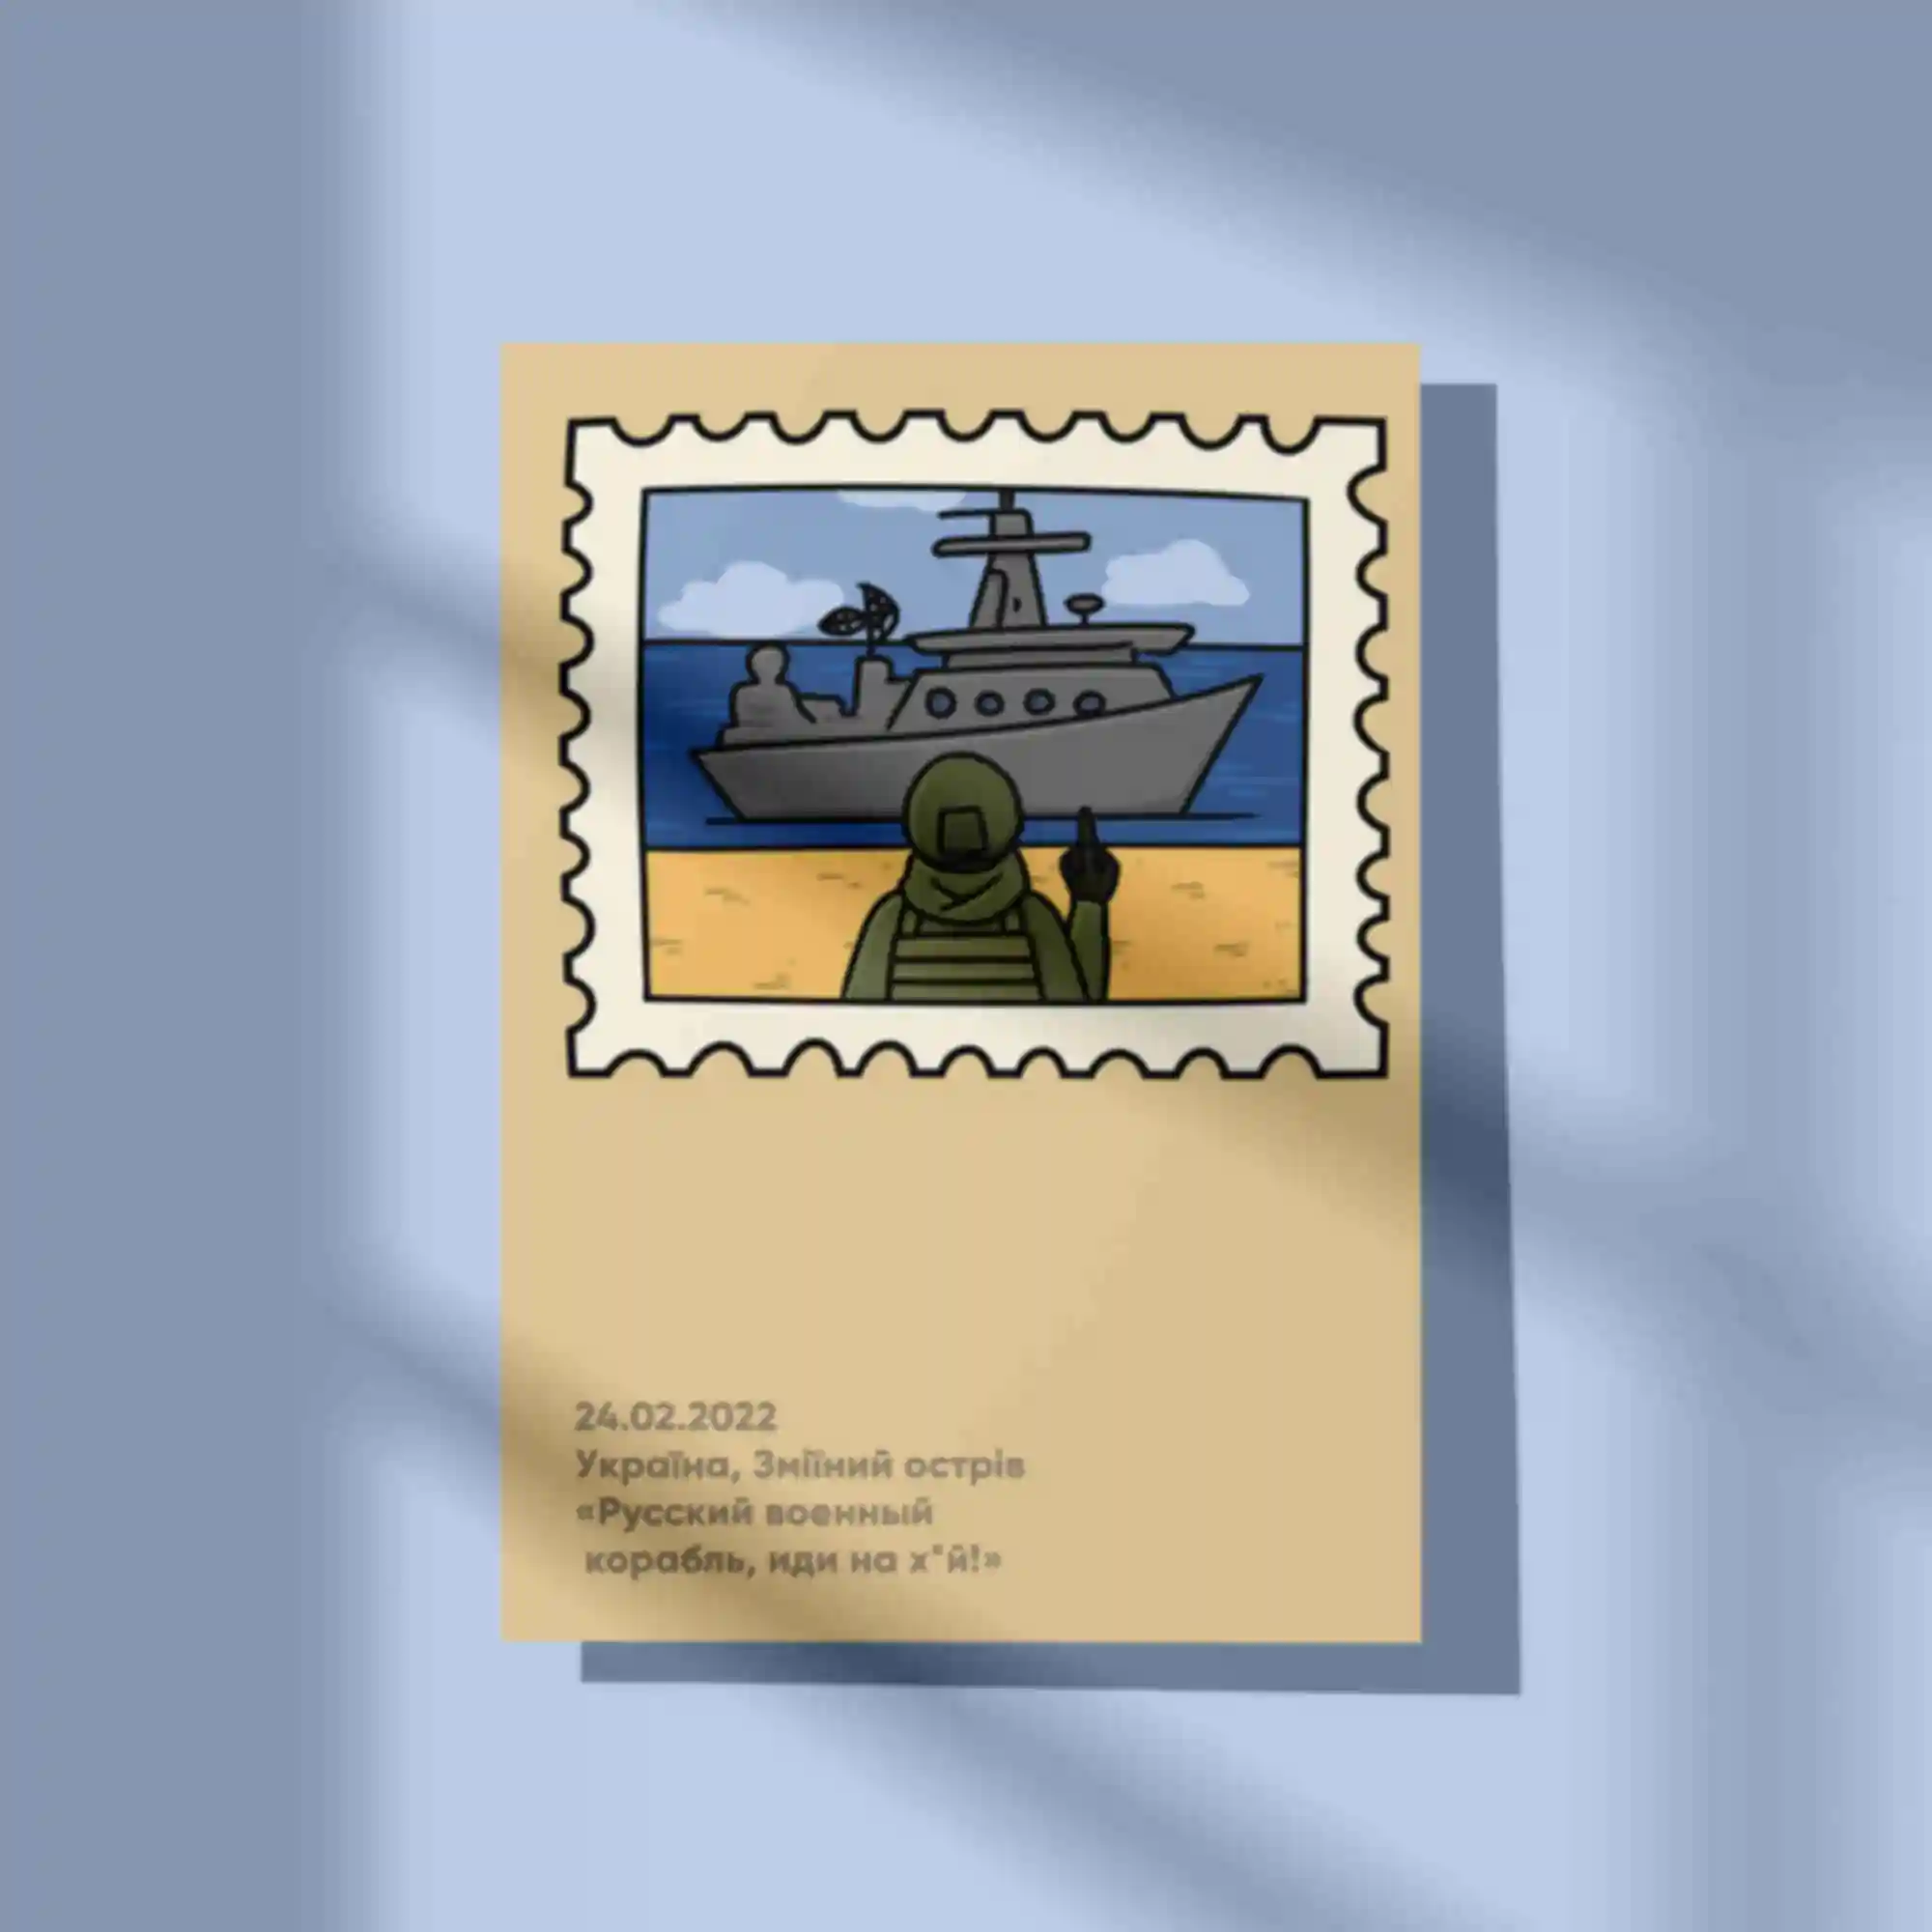 Открытка / постер «Воєнний корабль» • Змеиный • Украина • Патриотические сувениры. Фото №111